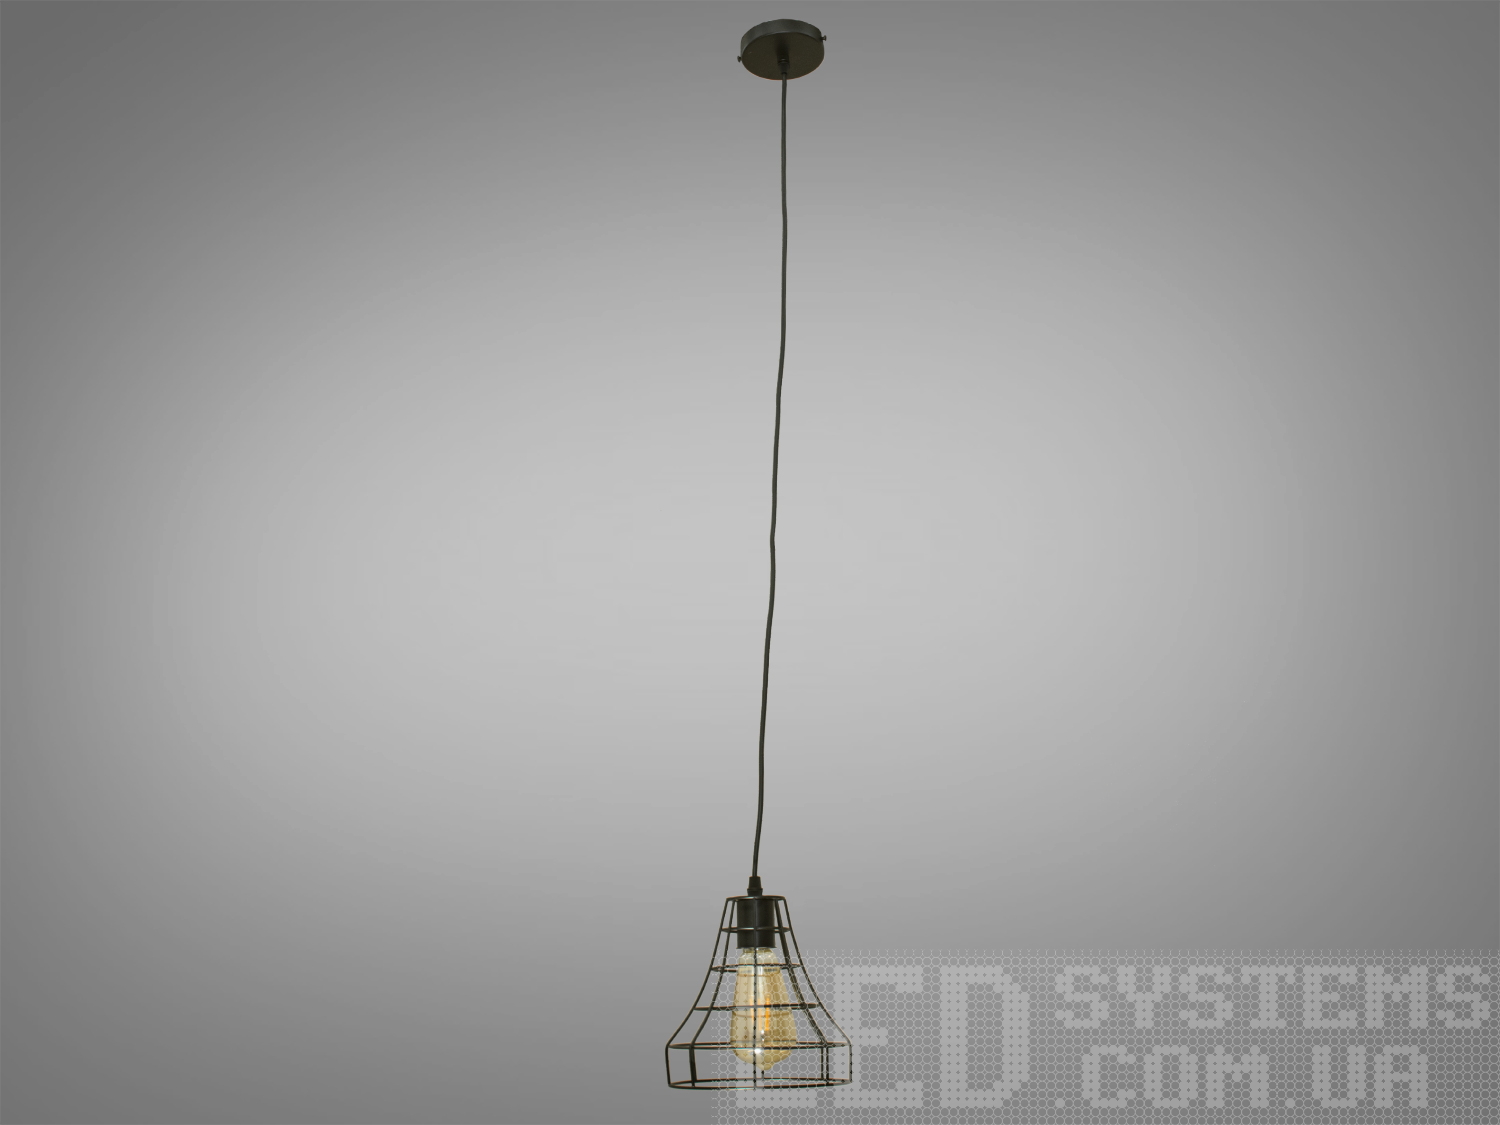 Світильник підвіс в стилі Loft, привносить в простір поєднання промислового та сучасного дизайну. Її унікальність виражена в металевому плафоні, виготовленому зі сплетеного дроту, і теплому світлі лампочки Edison.
 Основні Характеристики:
Металевий Плафон із Плетеного Дроту:
Металевий плафон виглядає, ніби він вручну плетений з дроту, створюючи цікавий інтер'єрний акцент та віддзеркалюючи простоту лофт-стилю.
Лампочка Edison:
В центрі плафону розташована лампочка Edison, яка надає освітленню теплоту та неповторний вигляд, підкреслюючи індустріальний характер.
Простий і Ефективний Дизайн:
Люстра має простий, але ефективний дизайн, який дозволяє впроваджувати її в різні стилі інтер'єру.
Металевий Відтінок:
Металевий відтінок плафону може бути вибраний відповідно до загального кольорового рішення приміщення.
Сфера застосування:
Кухня чи Їдальня:
Ідеально підійде для настільного освітлення над кухонним столом чи барною стійкою, додаючи атмосферу теплоти та стилю.
Лофтові Простори:
Лофтові приміщення чи студії, де цінується сучасний індустріальний дизайн.
Кафе або Бари:
У комерційних приміщеннях, таких як кафе або бари, де стиль лофт завжди в тренді.
Творчі Робочі Простори:
В офісах чи творчих просторах (арт-простори, коворкінги, квеструми, фото-студії  та інш., де важливий естетичний дизайн і функціональність.
Цей світильник в стилі Loft створює не лише практичне світло, але і виражає тепло та стиль, вносячи унікальний шарм в будь-яке приміщення.
Лампочка е27 в комплект не входить.